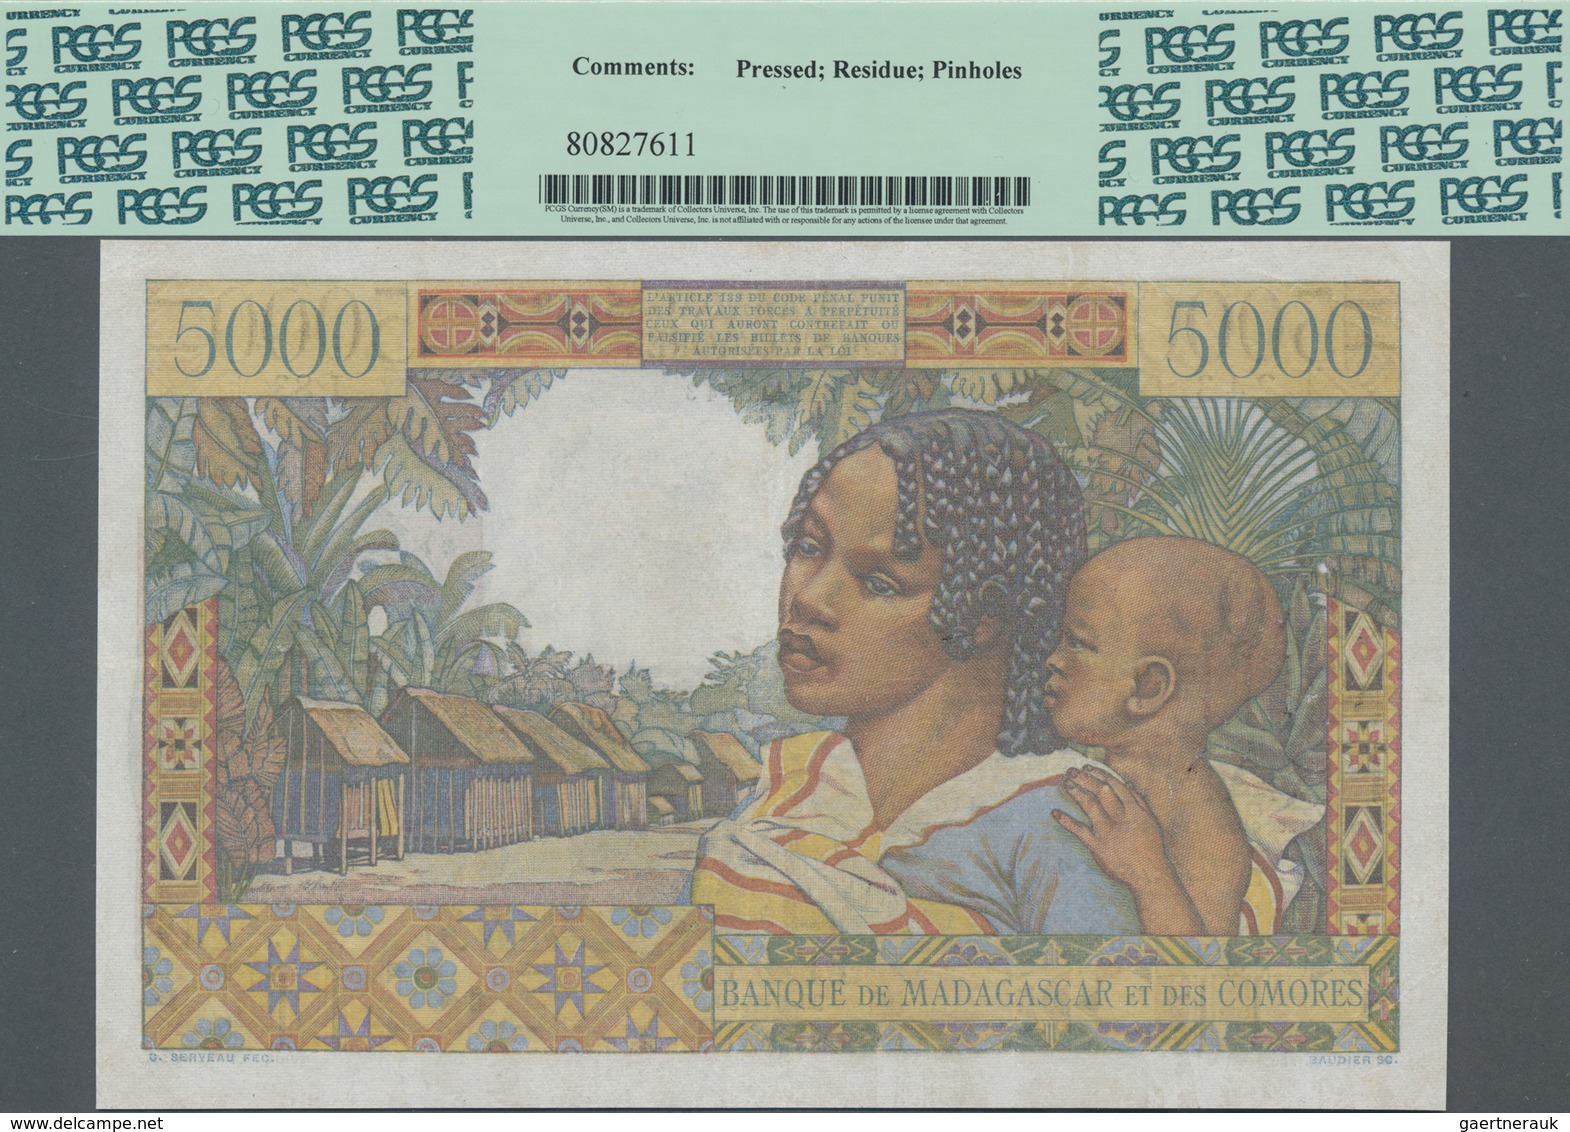 Madagascar: Banque De Madagascar Et Des Comores 5000 Francs 1950 With Signature Title Left: "Control - Madagaskar